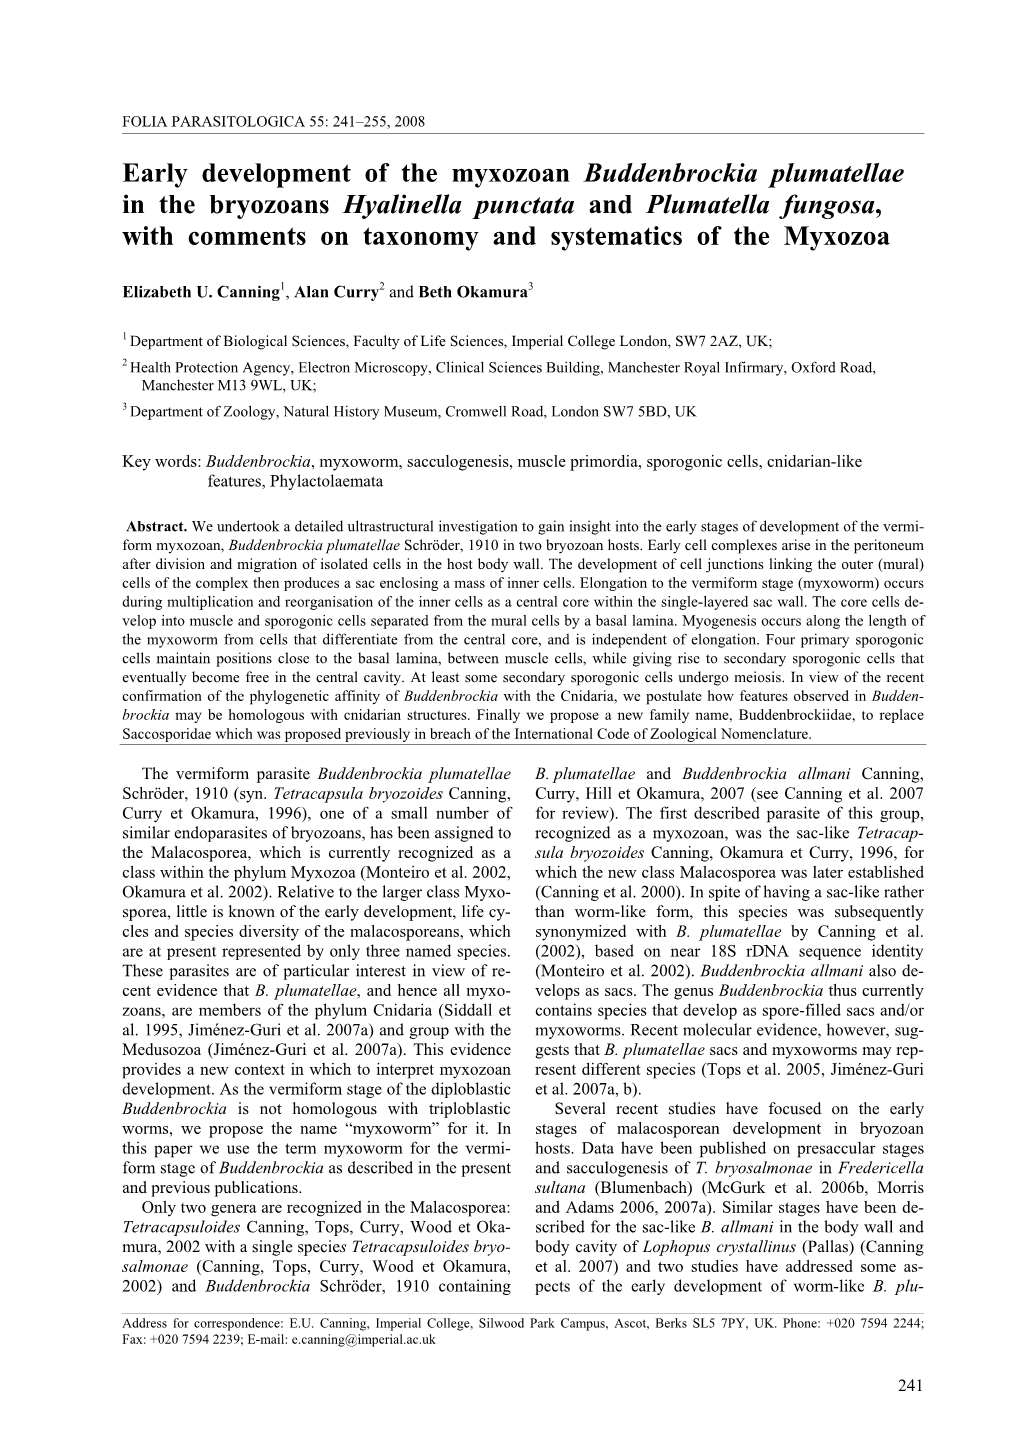 Early Development of the Myxozoan